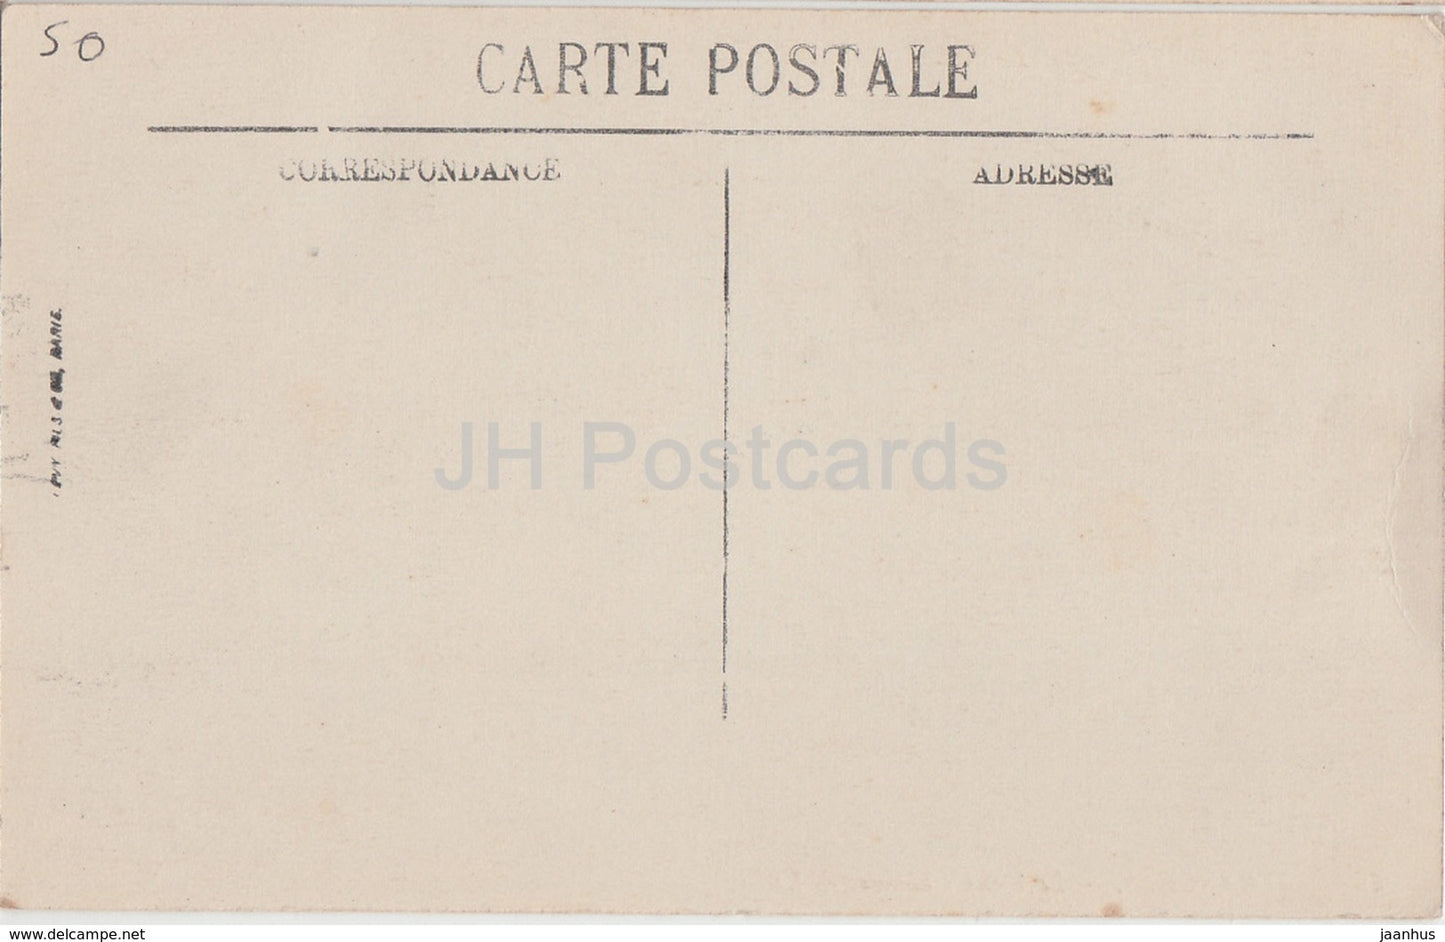 Avranches - Le Vieux Chateau - castle - 100 - old postcard - France - unused